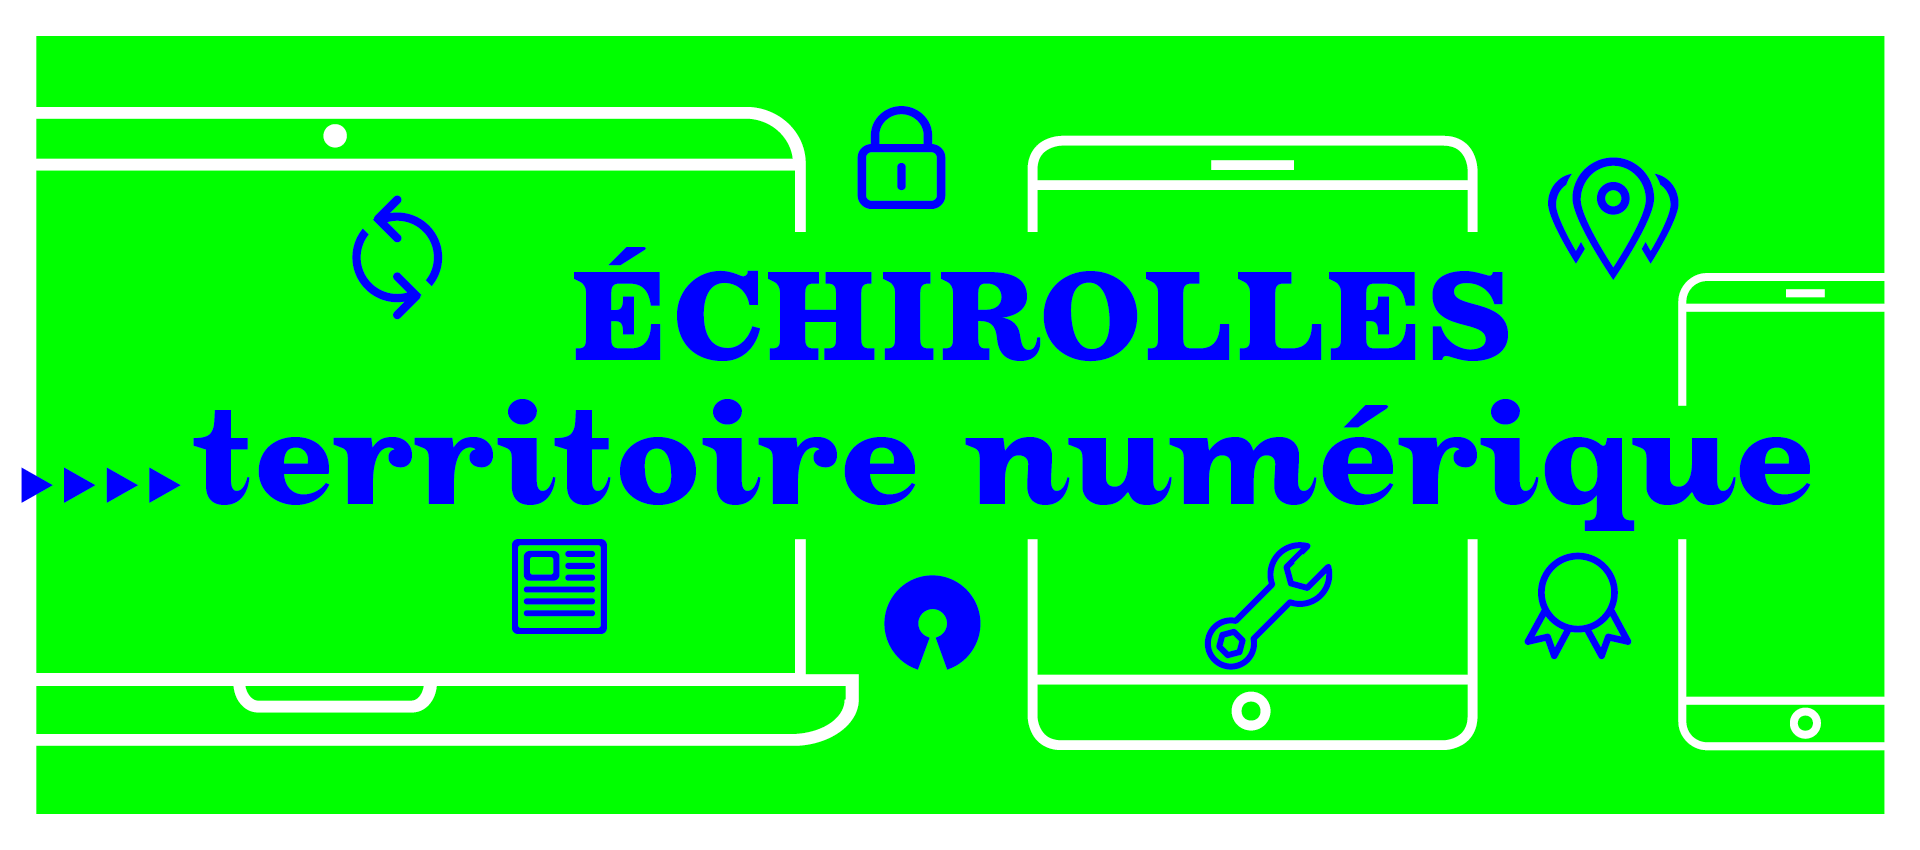 Texte Echirolles, territoire numérique avec fond vert et pictogrammes ordinateur, tablette et téléphone